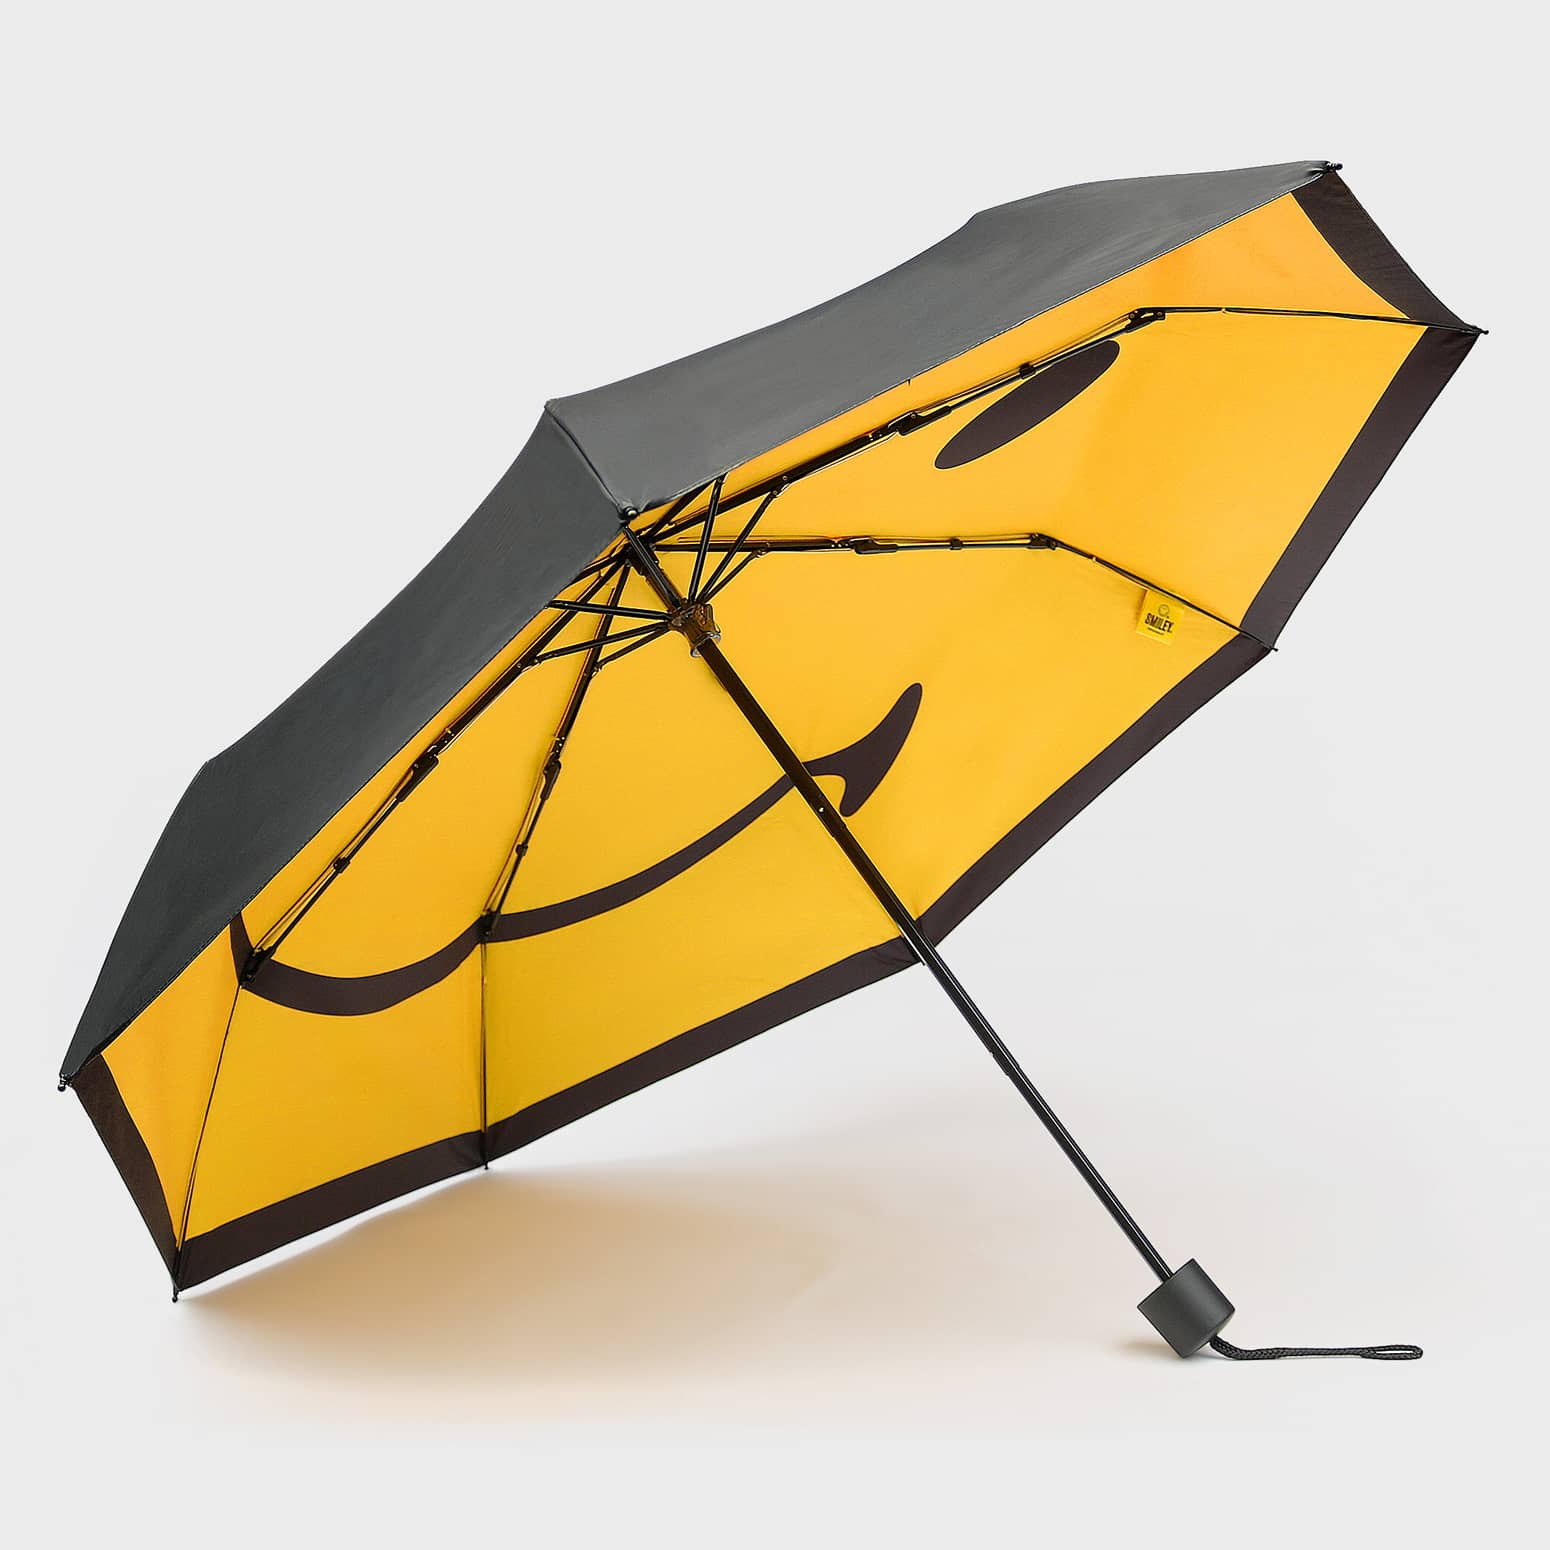 Smiley Face Umbrella - Brighten Up a Rainy Day